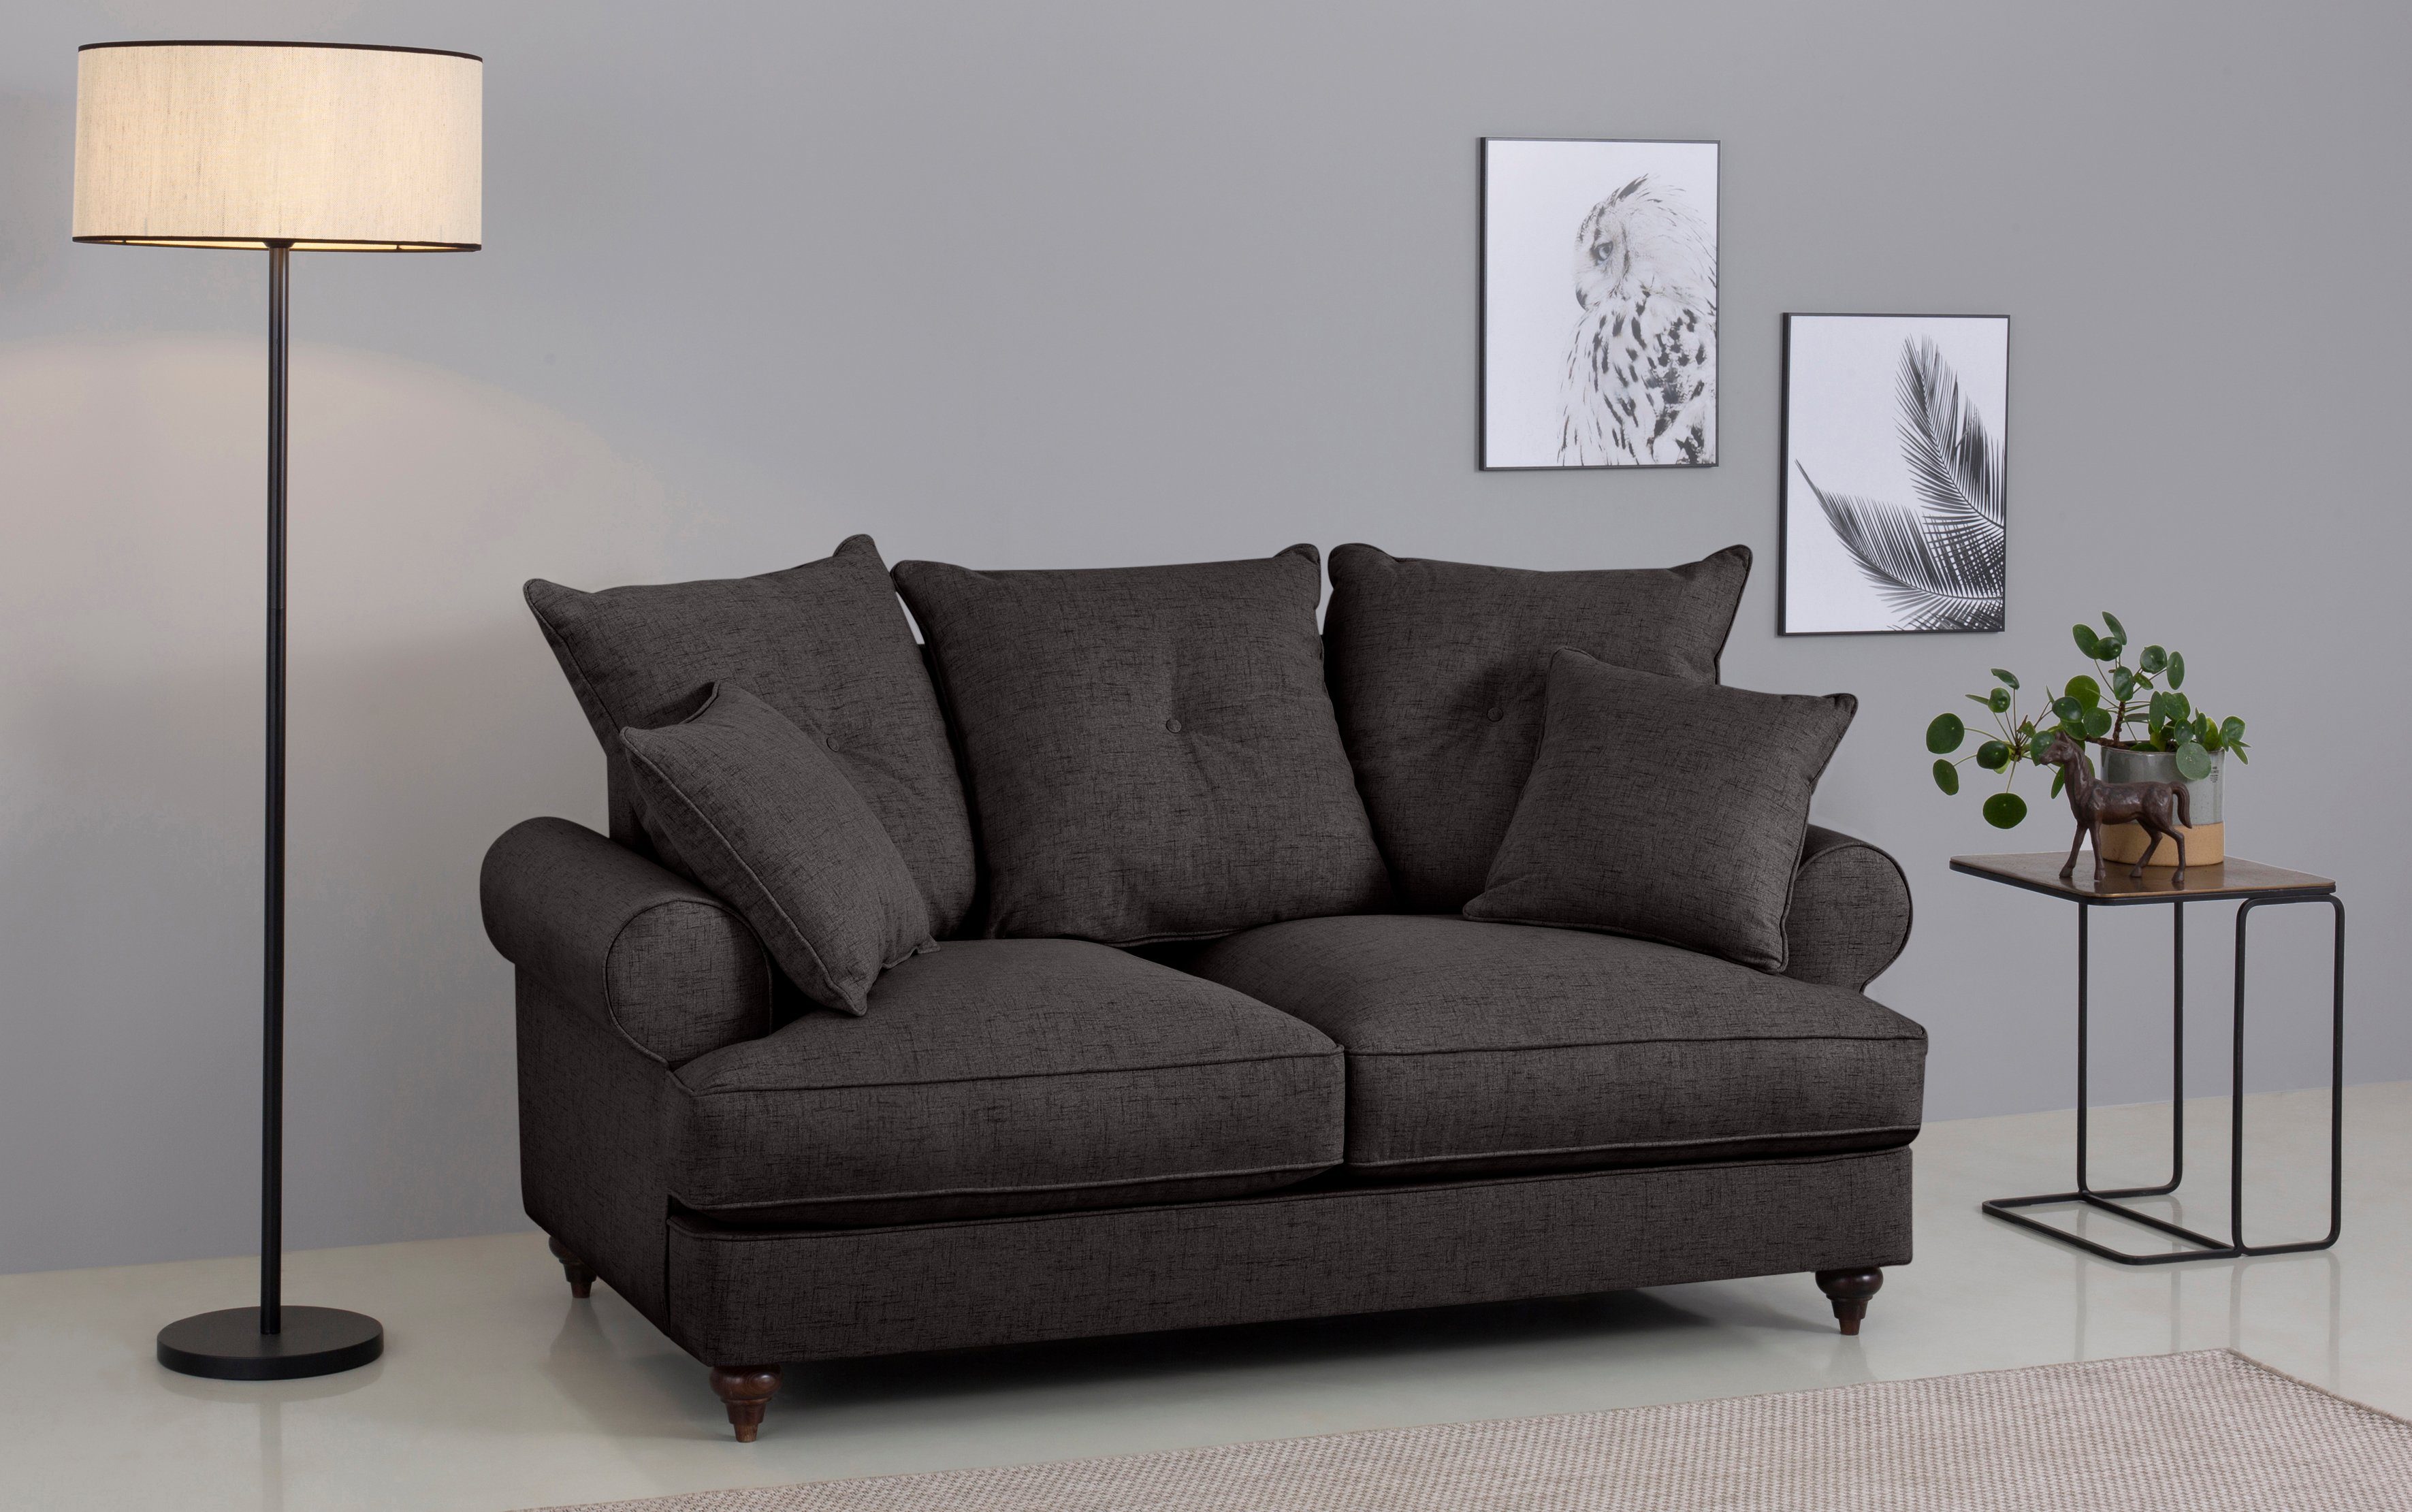 Home affaire 2-Sitzer verschiedenen hochwertigem mit dark Kaltschaum, Bloomer, erhältlich Farben in brown